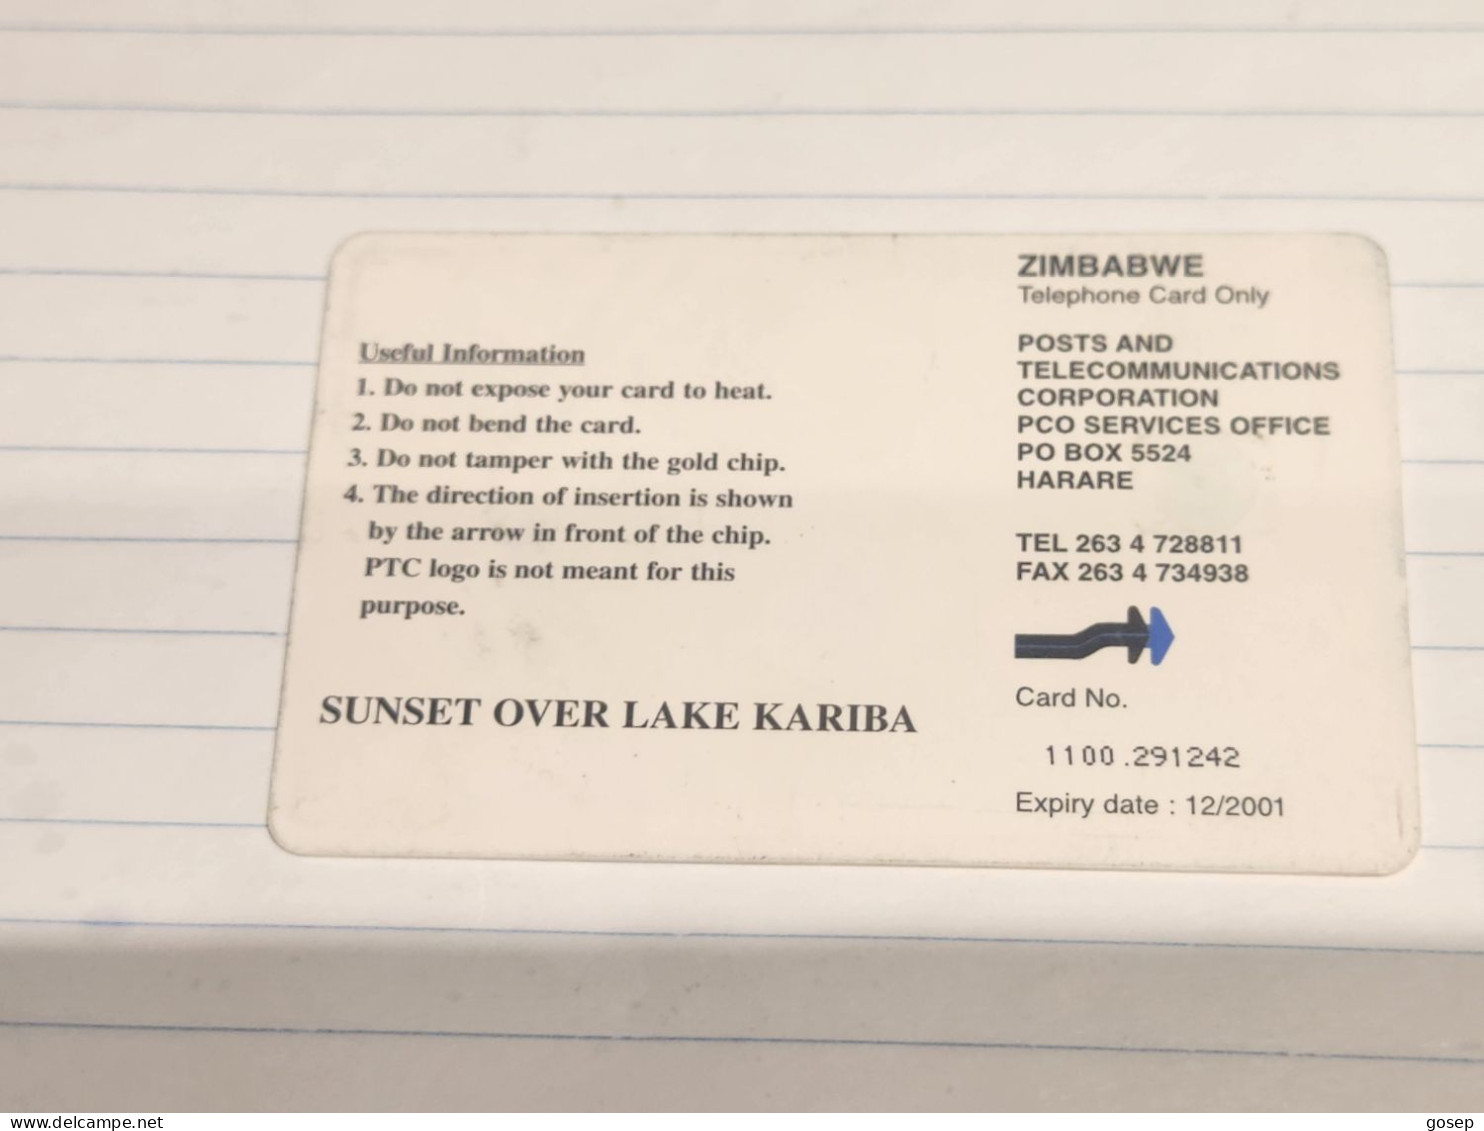 Zimbabwe-(ZIM-36A)-Sunset Over Lake Kariba-(72)-($100)-(1100-291242)-(1/12/2001)-(tirage-50.000)-used Card+1card Free - Simbabwe